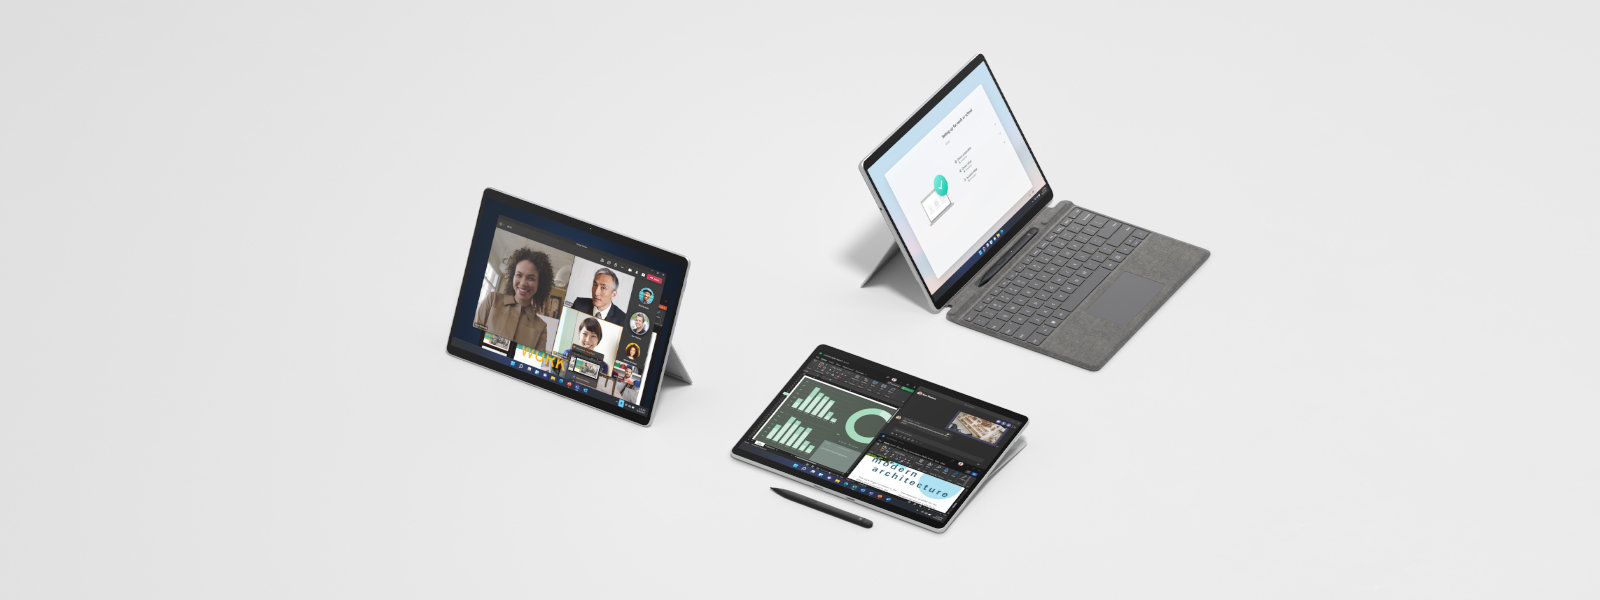 展示 Surface Pro 8 採用各種模式的影像